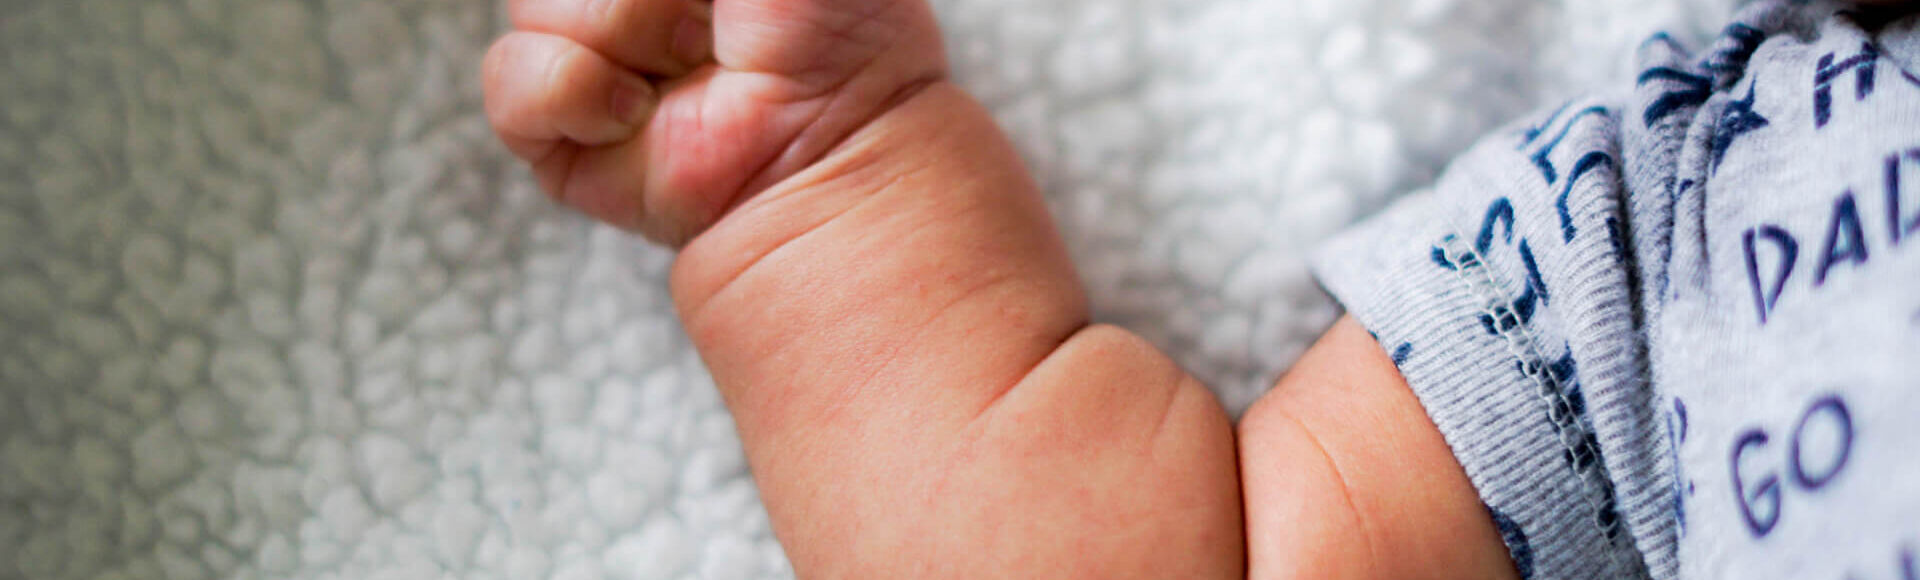 Comprendiendo las señas de tu bebé